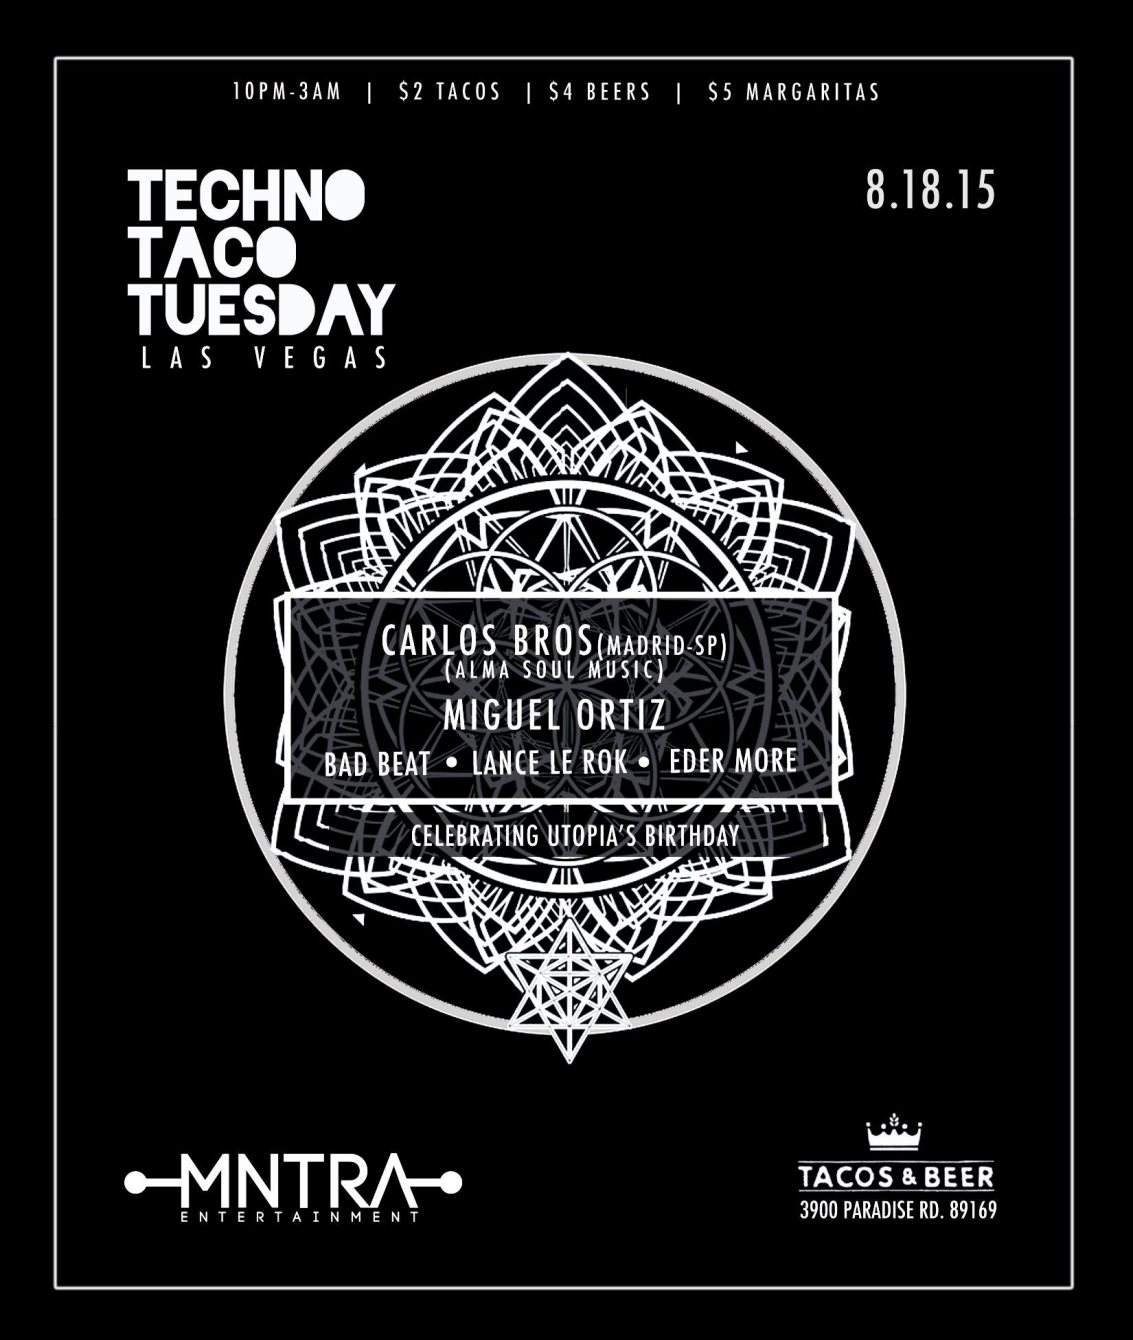 Techno Taco Tuesday presents Miguel Ortiz, Carlos Bros - Página frontal